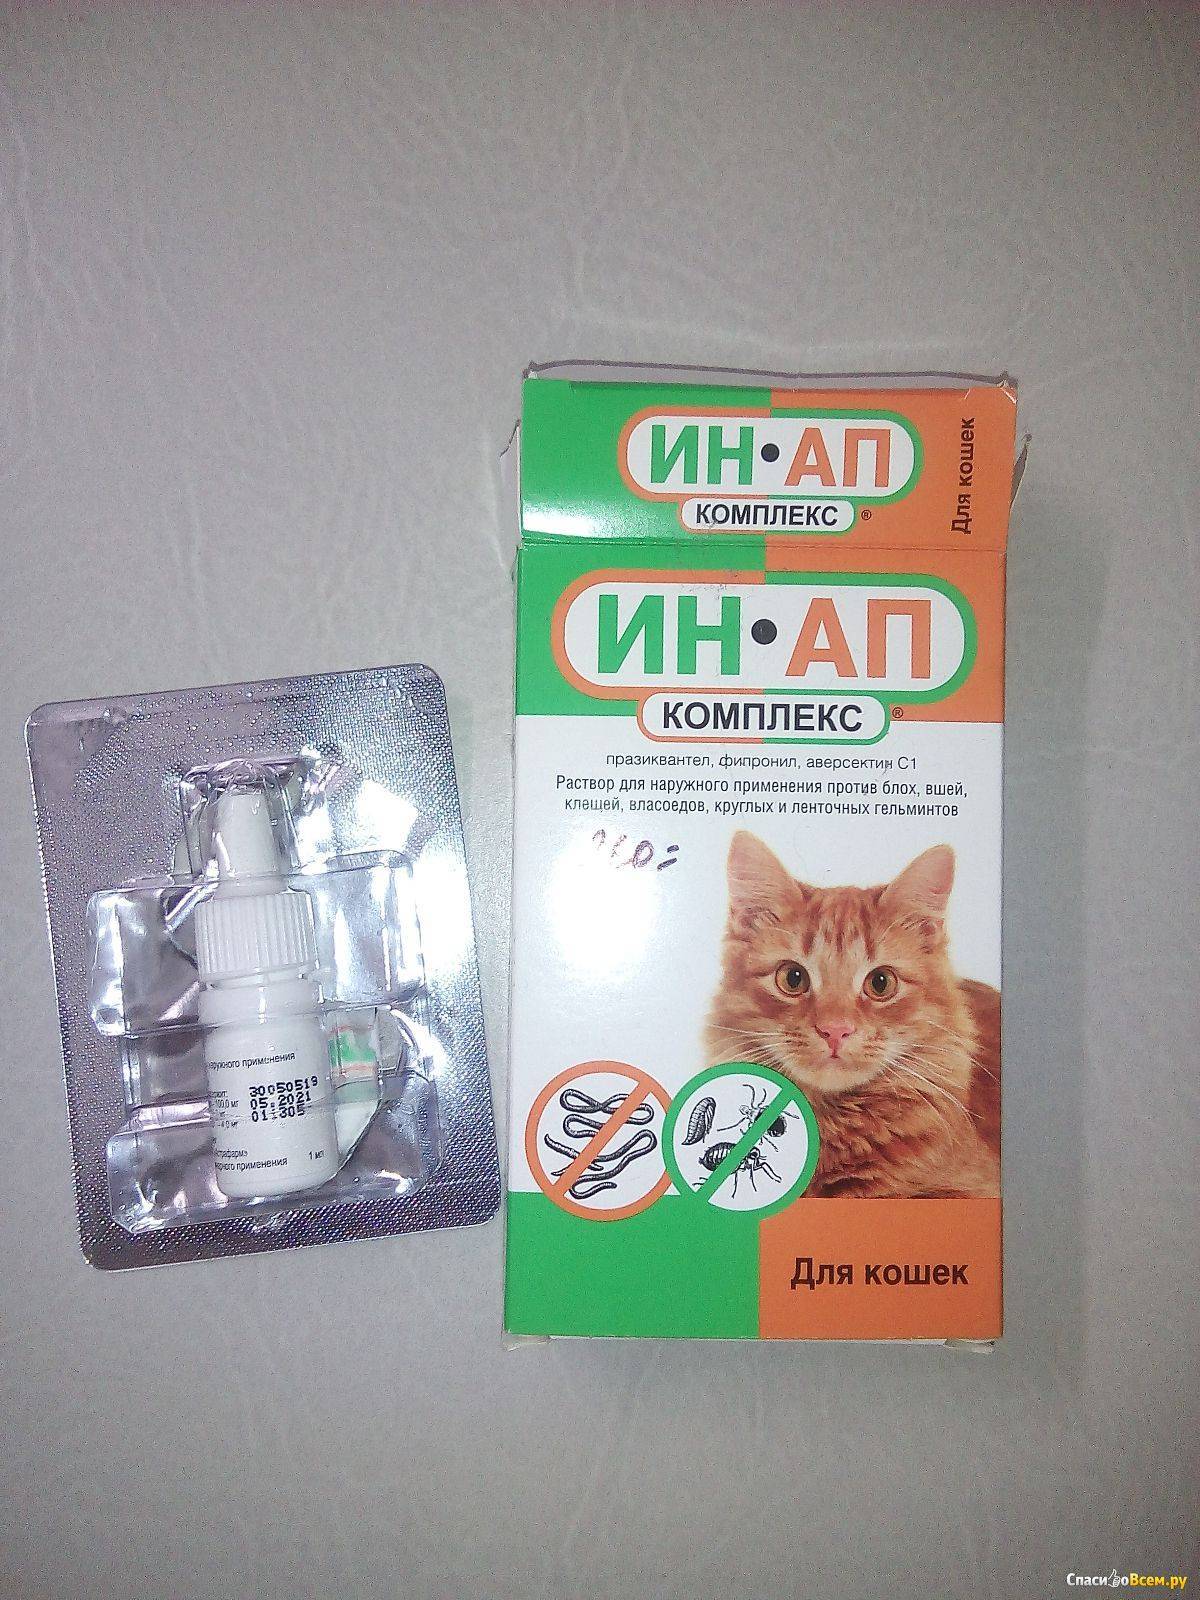 Ин-ап комплекс для кошек, инструкция по применению противопаразитарных капель